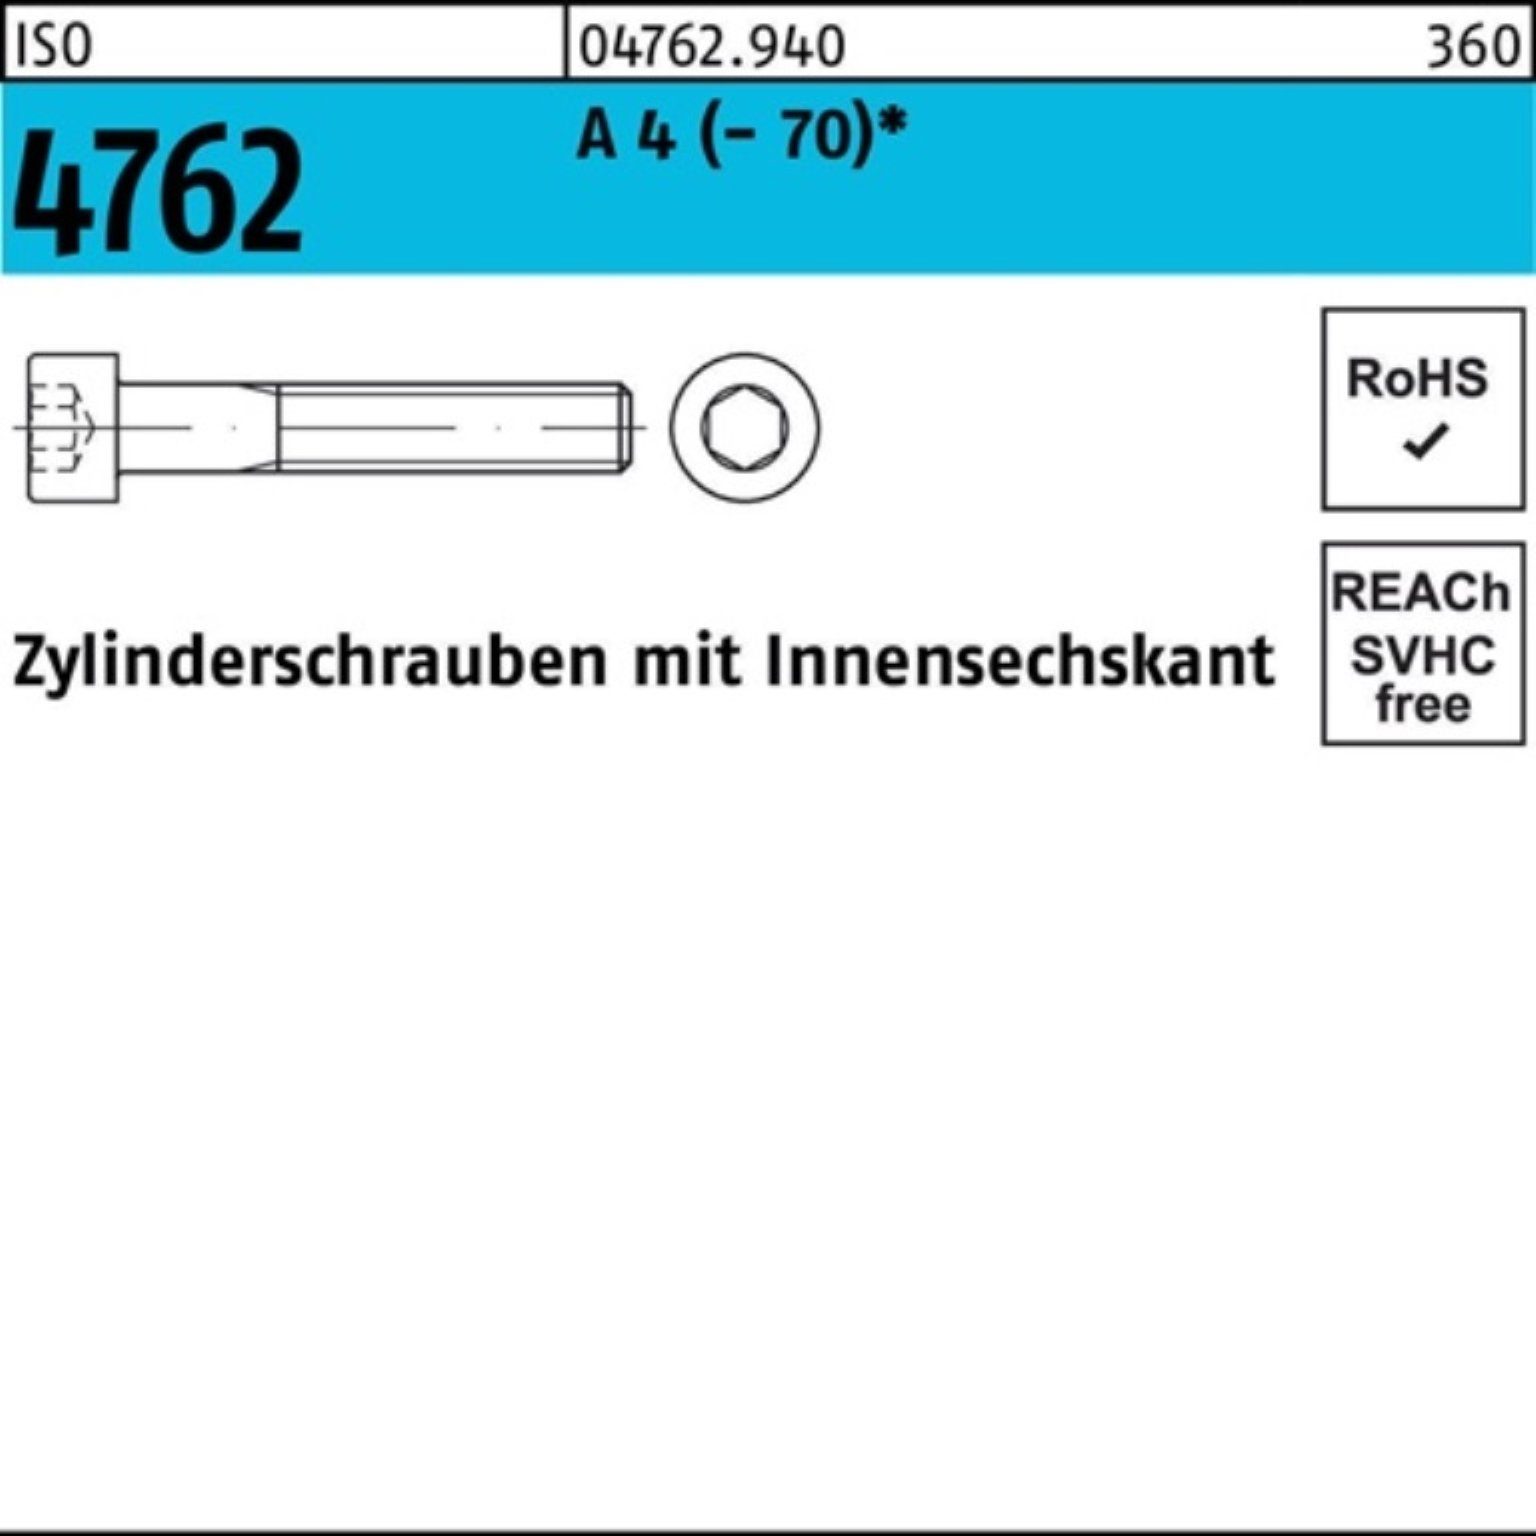 Innen-6kt 100 (70) ISO Zylinderschraube 100er A 4 150 4762 Zylinderschraube Reyher Pack M6x